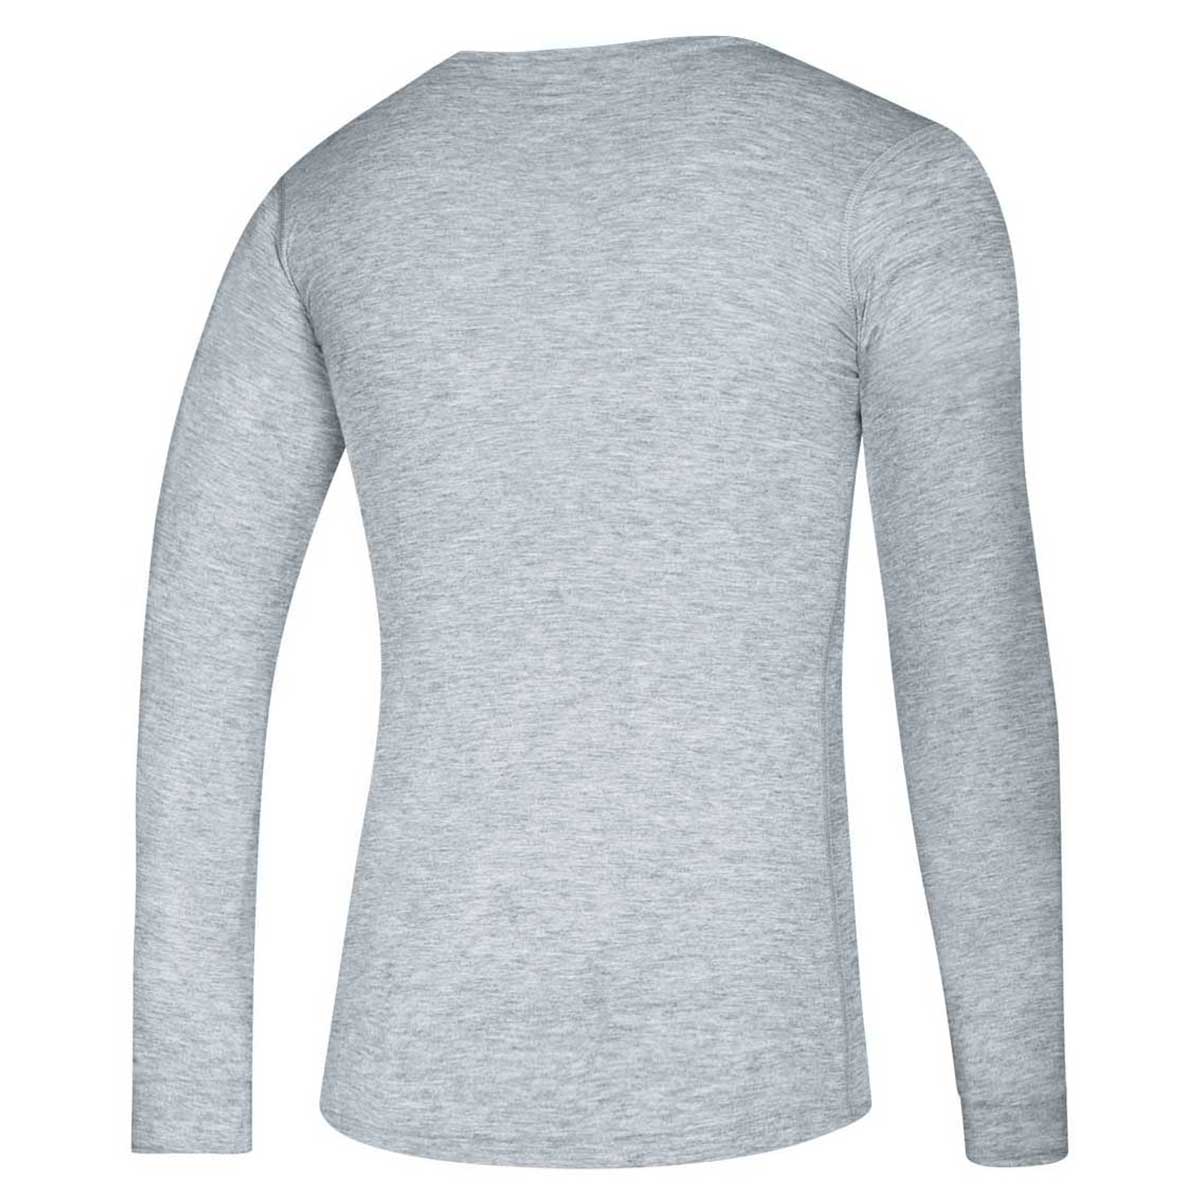 Mens Adidas Orlando Magic Performance Shirt Large Gray Long Sleeve  NBAfusion